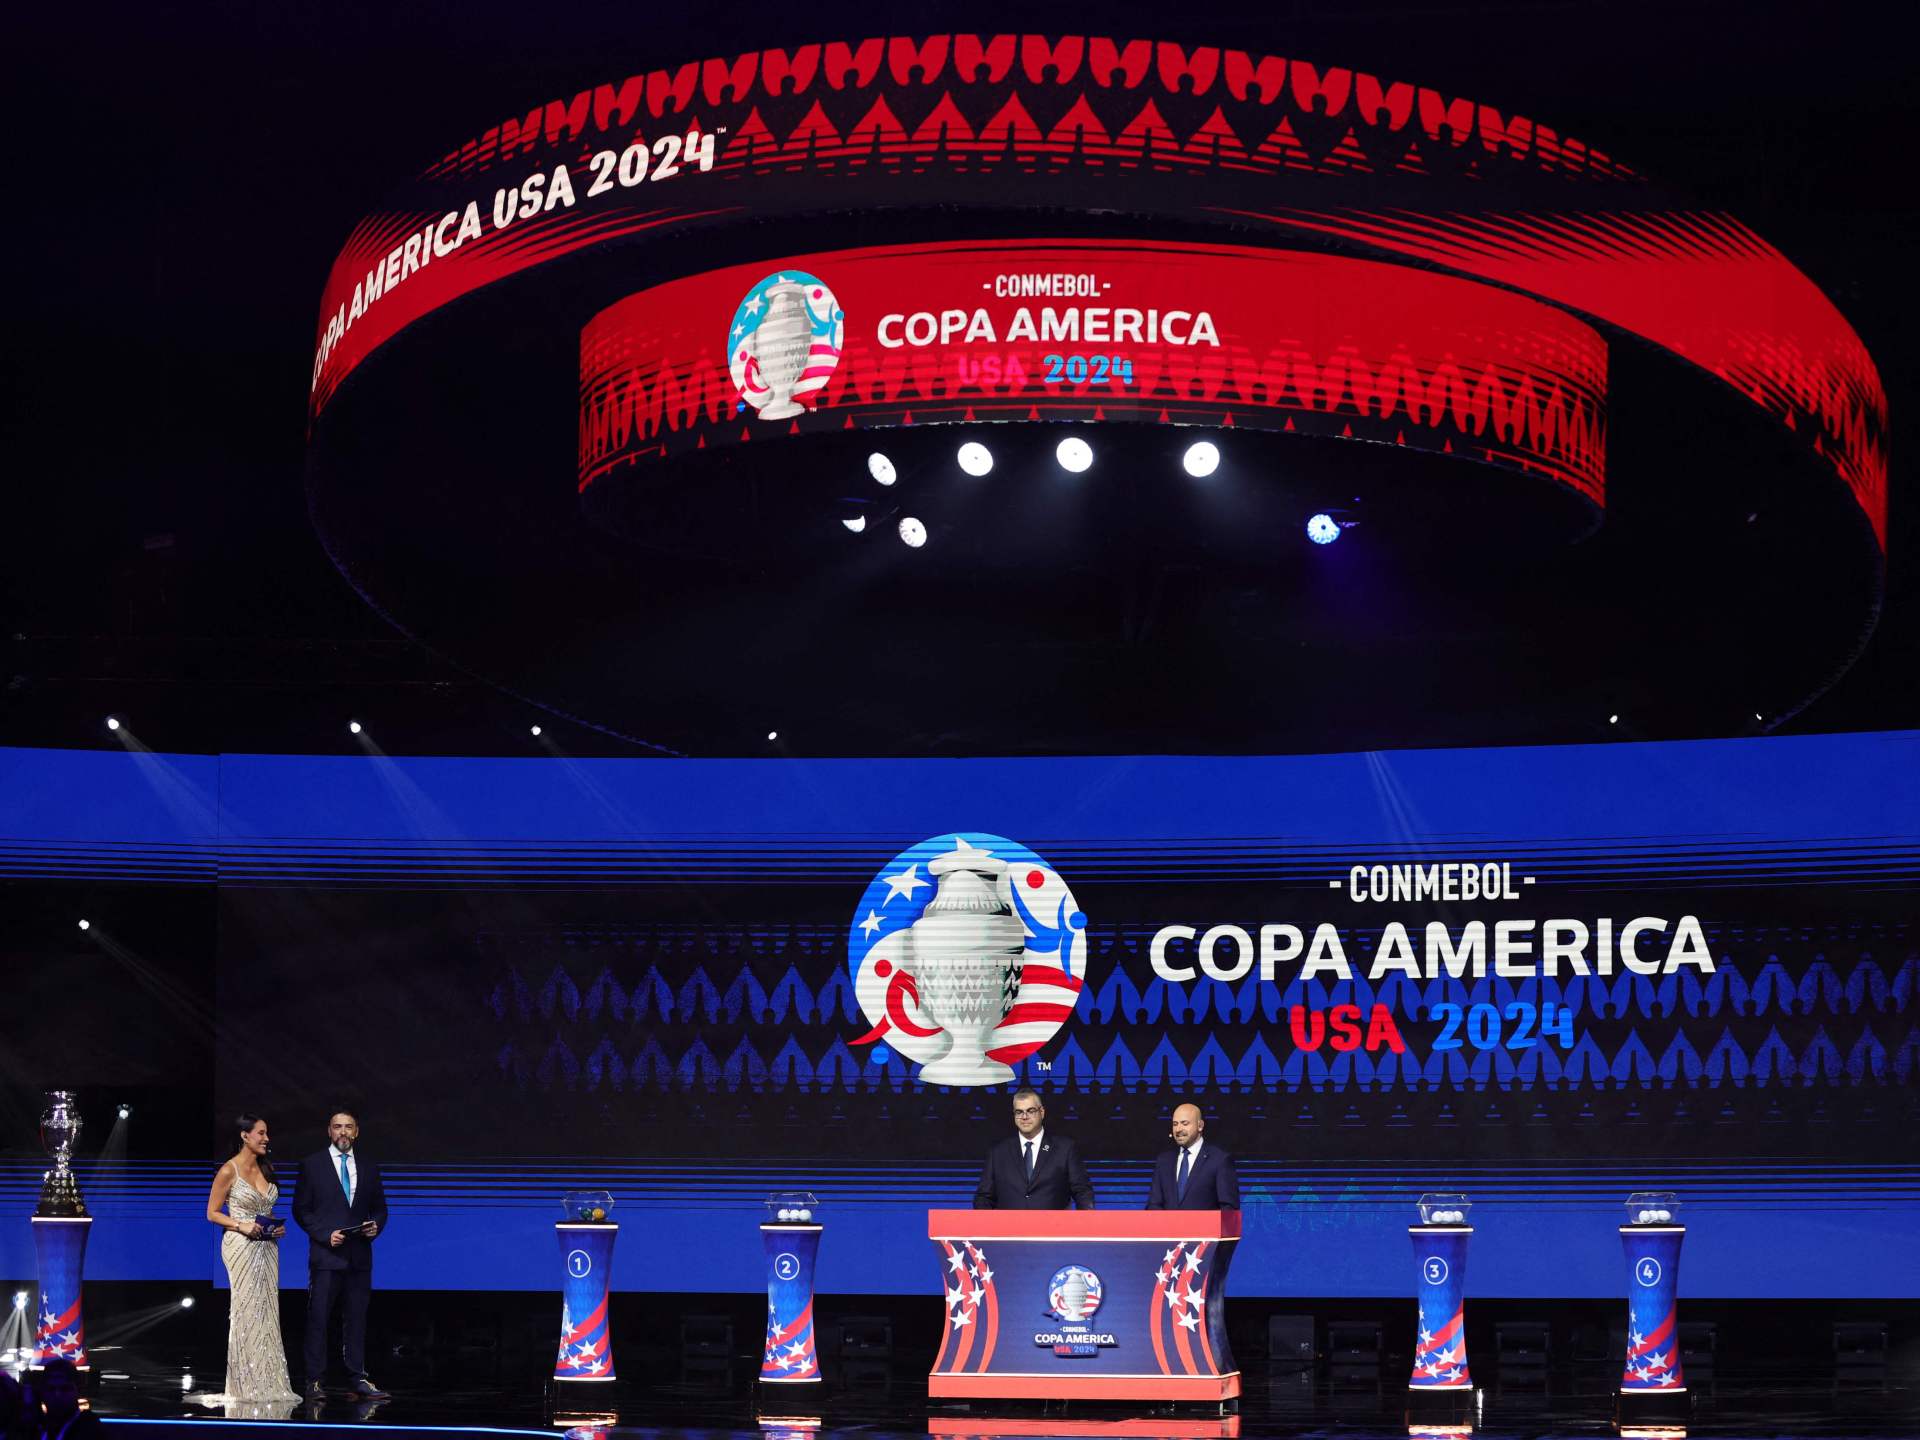 مجموعات ومواعيد مباريات بطولة كوبا أميركا 2024 في الولايات